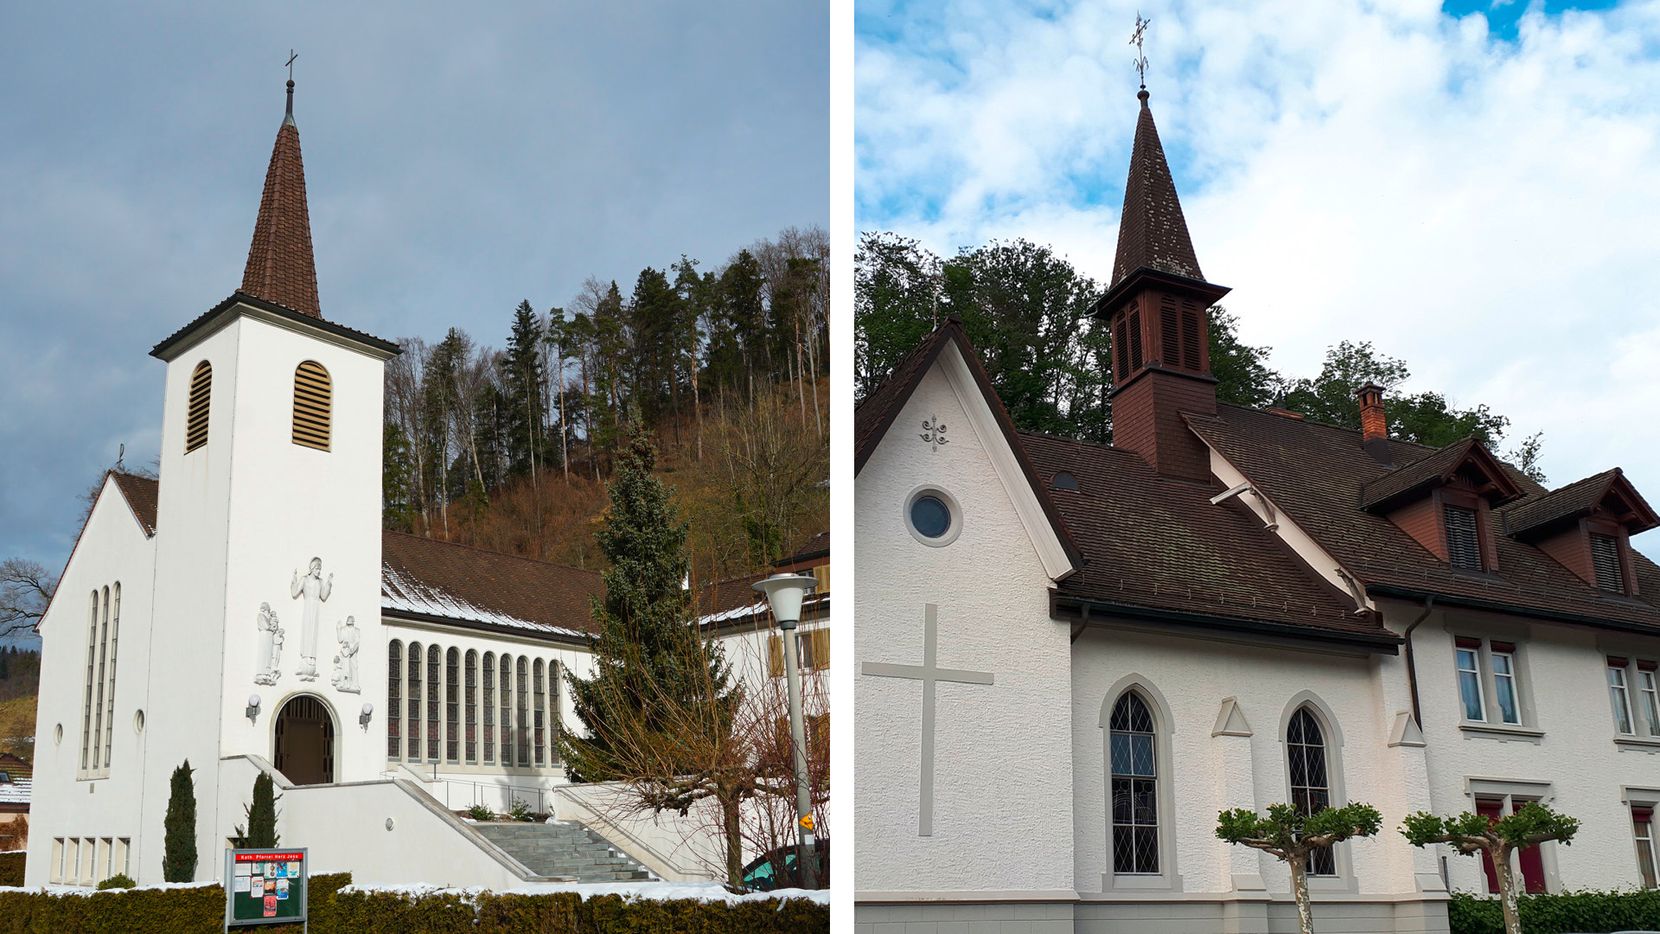 Bildkombo mit der Kirche Turbenthal links, Kirche Kollbrunn rechts.